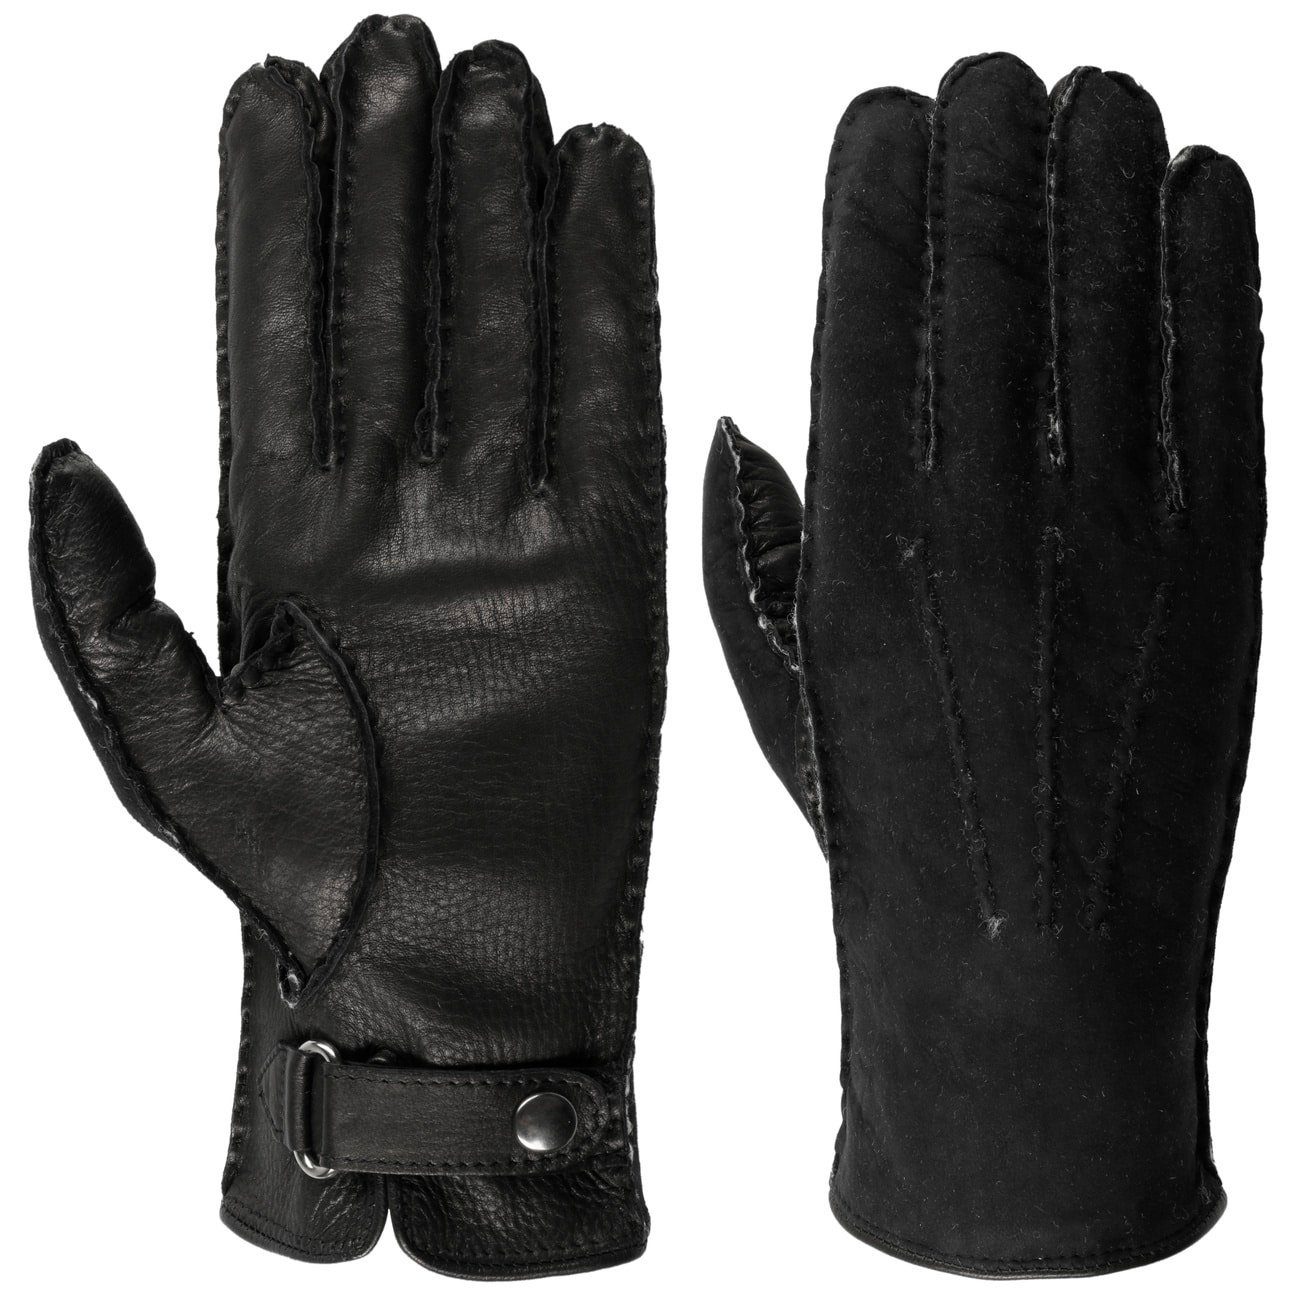 Caridei Lederhandschuhe Handschuhe mit Futter, Made in Italy schwarz-schwarz